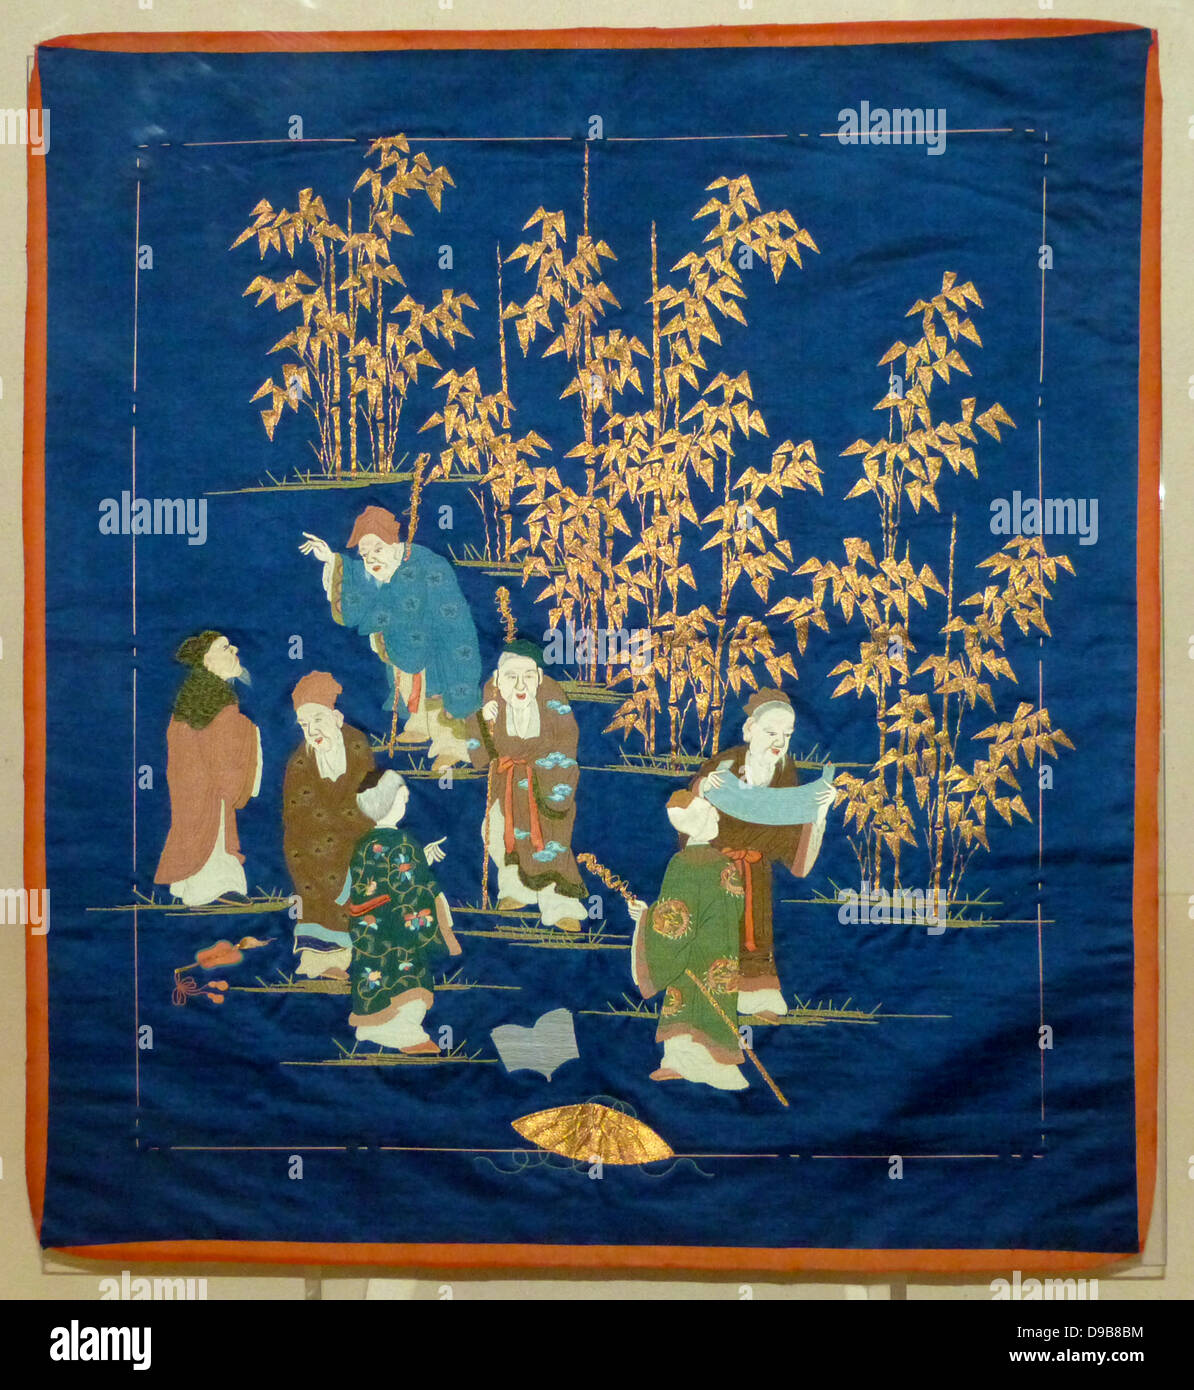 Geschenk. Dunkelblau Atlasbindung Seide mit Stickereien. Die sieben Weisen sind eine Gruppe von dritten Jahrhundert chinesische Gelehrte, die in einem Bambushain met zu Entspannen, Trinken und taoistischen Philosophie diskutieren. In Japan sind sie im Volksmund mit den sieben Göttern gleichgesetzt. Stockfoto